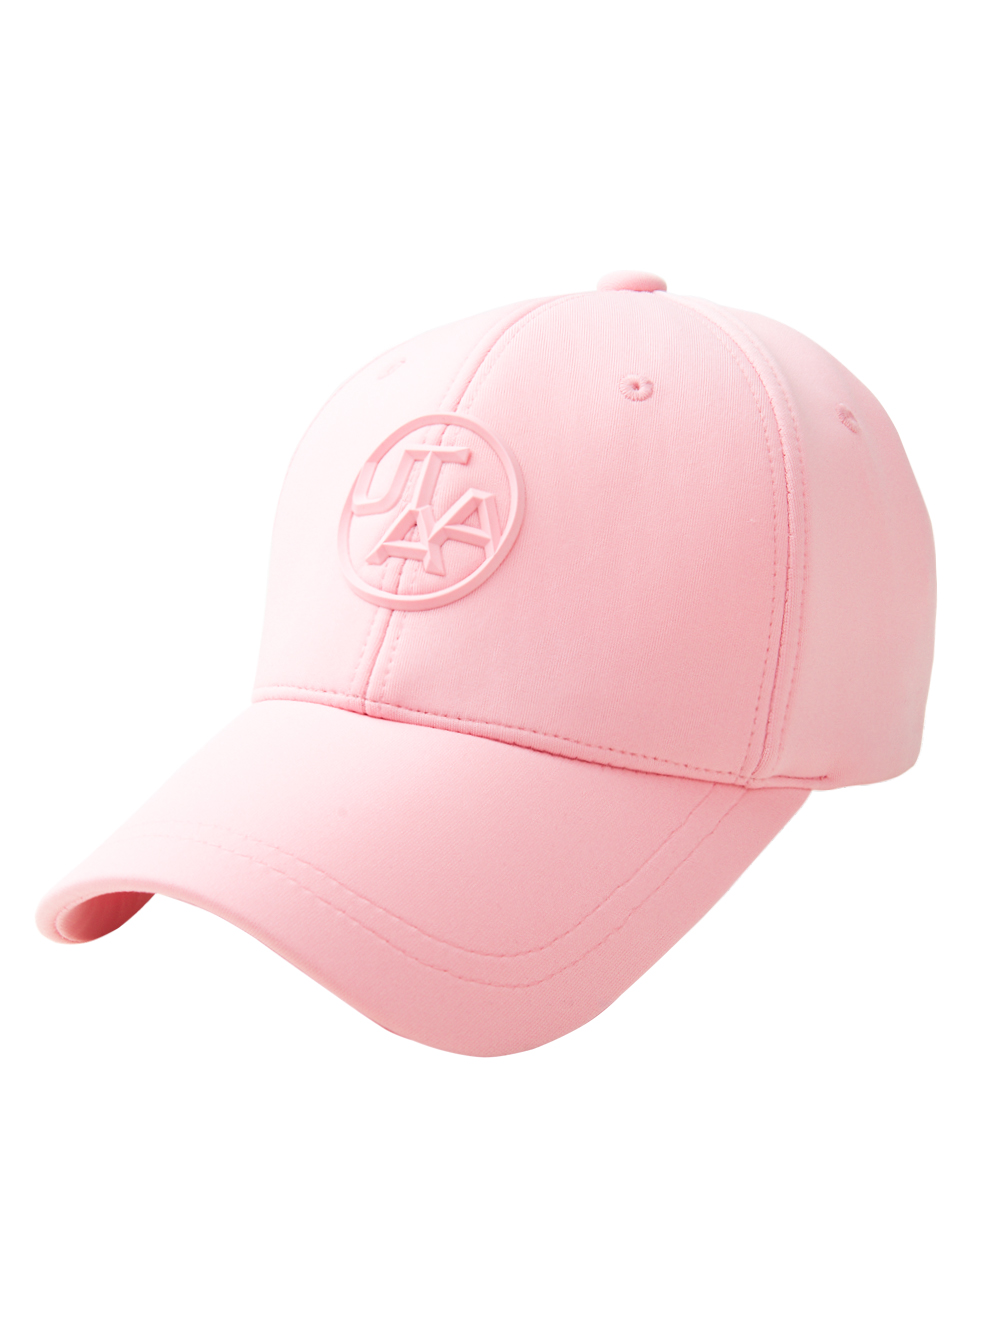 UTAA Figure Symbol Color Cap : Light Pink (UC0GCU530LP)